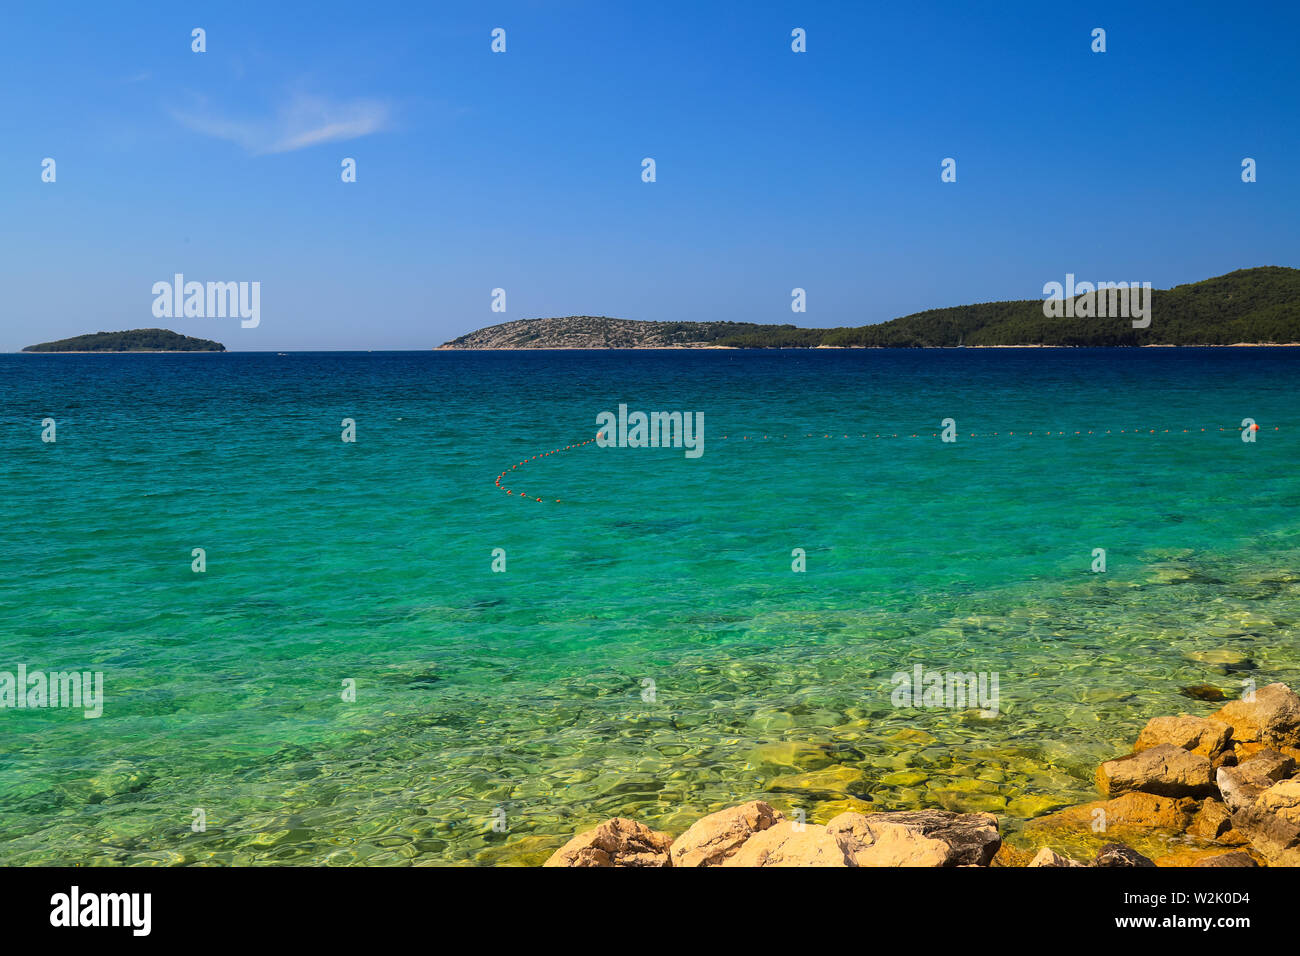 Meer Hintergrund, Sibenik, Kroatien. Transparente, klare Wasser auf einem ökologisch sauberen, malerischen Sommer Strand. Kroatischen Sommer Ferien-, Reise- und Stockfoto